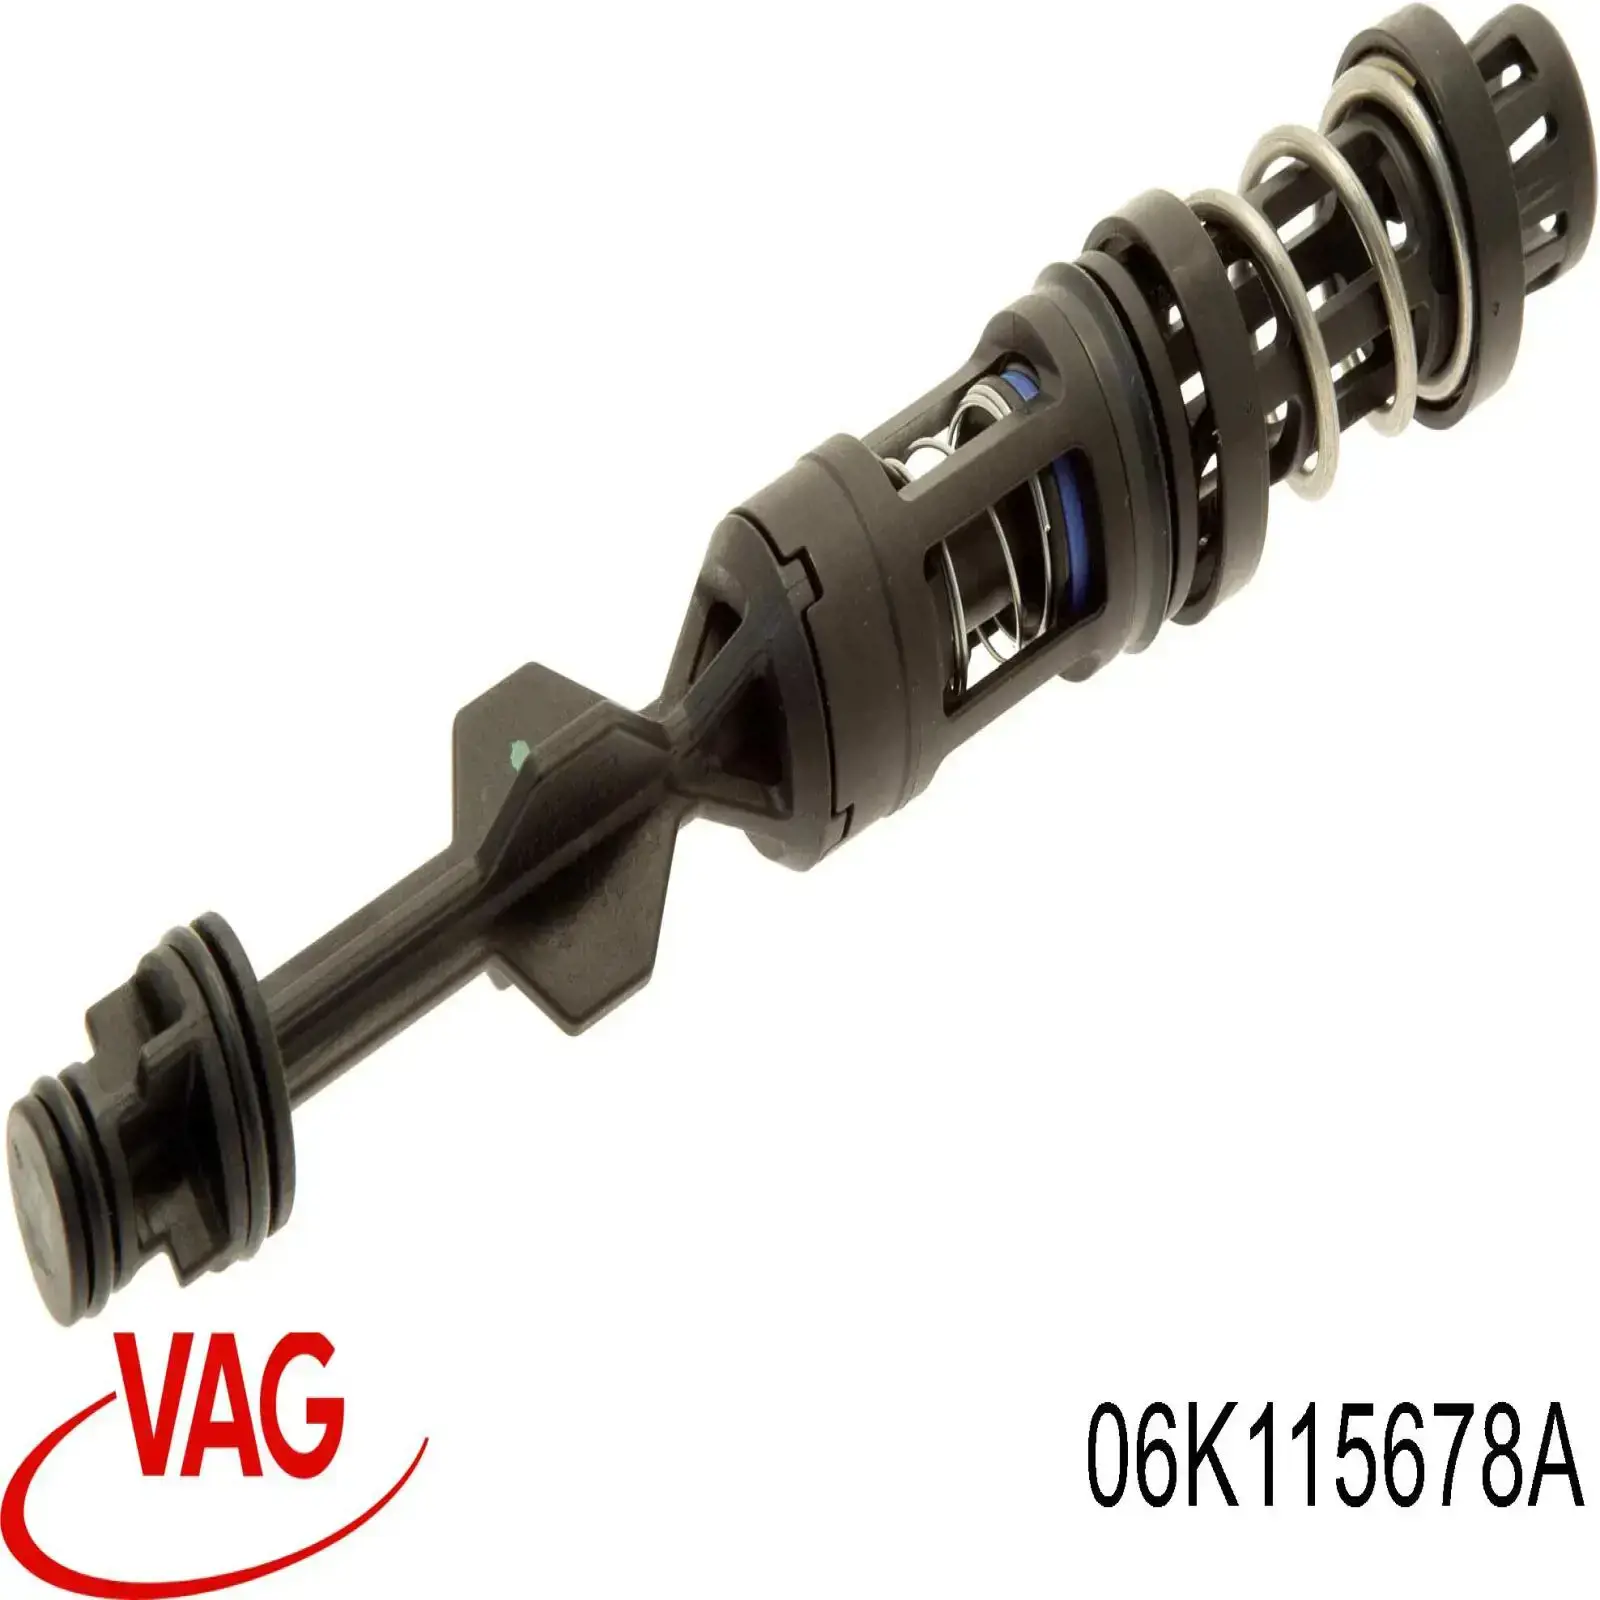 06K115441C VAG varilla de filtro de aceite de el tubo